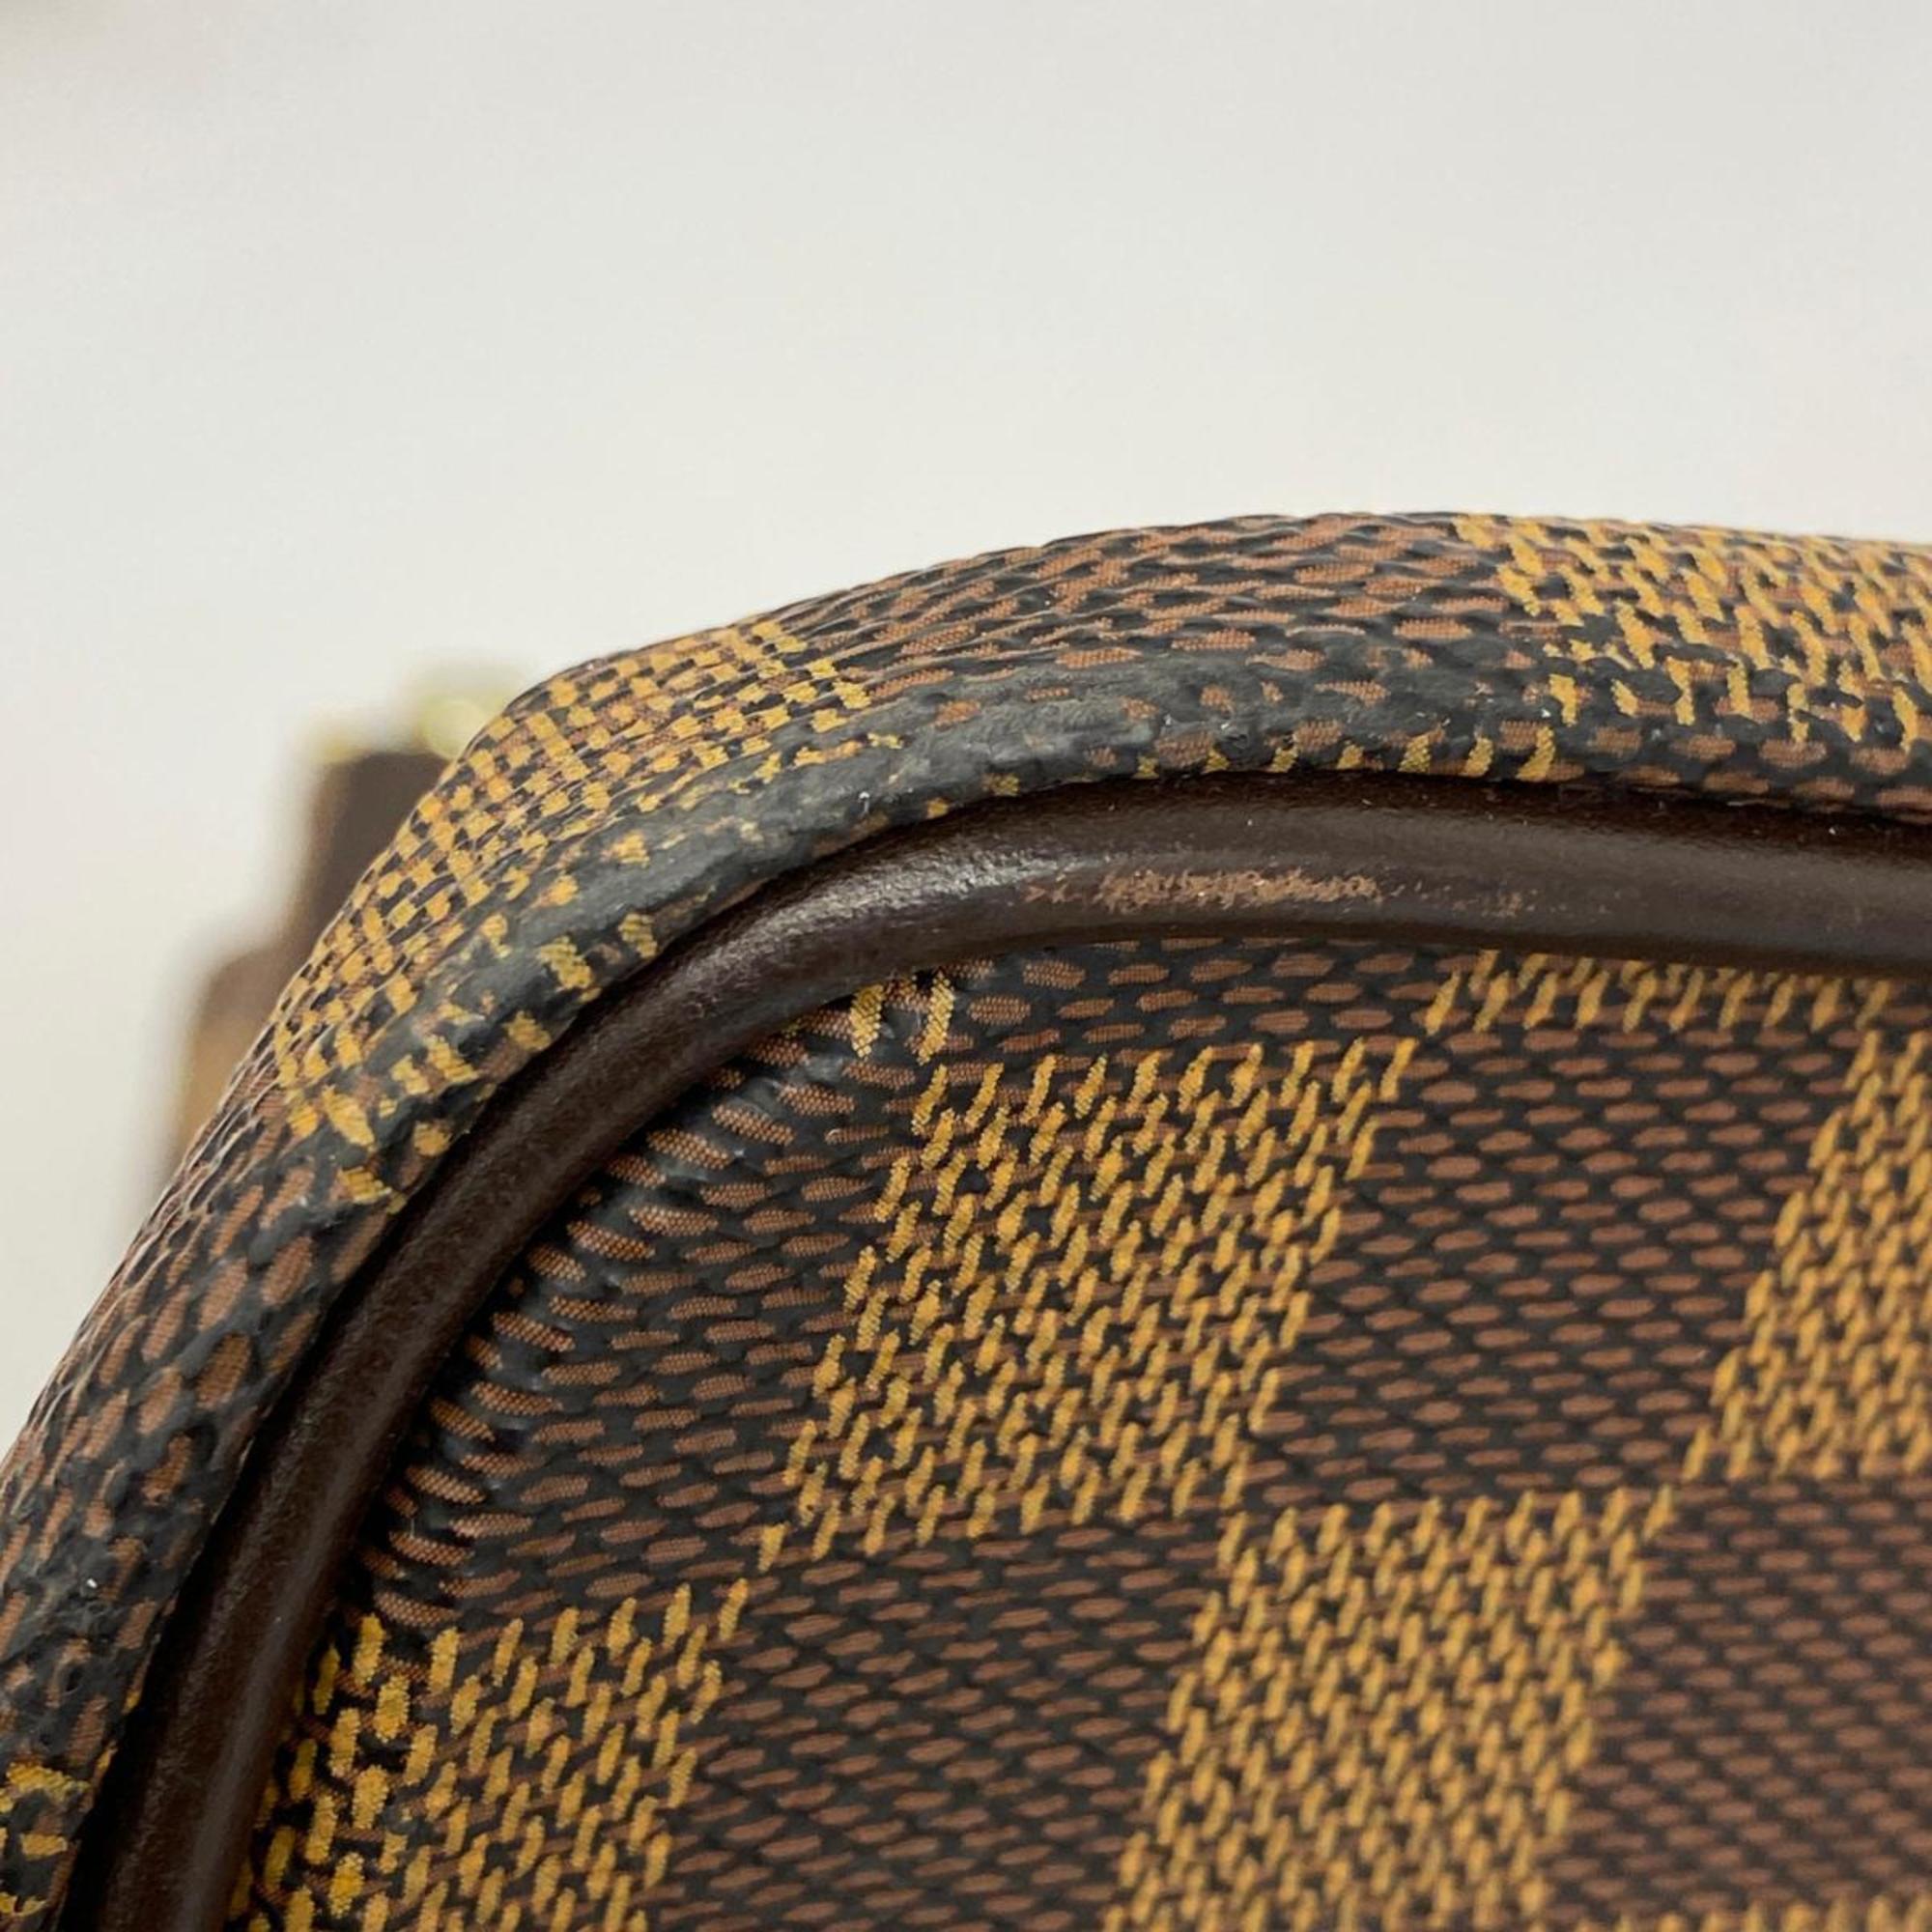 Louis Vuitton Boston Bag Damier Greenwich GM N41155 Ebene Men's Women's